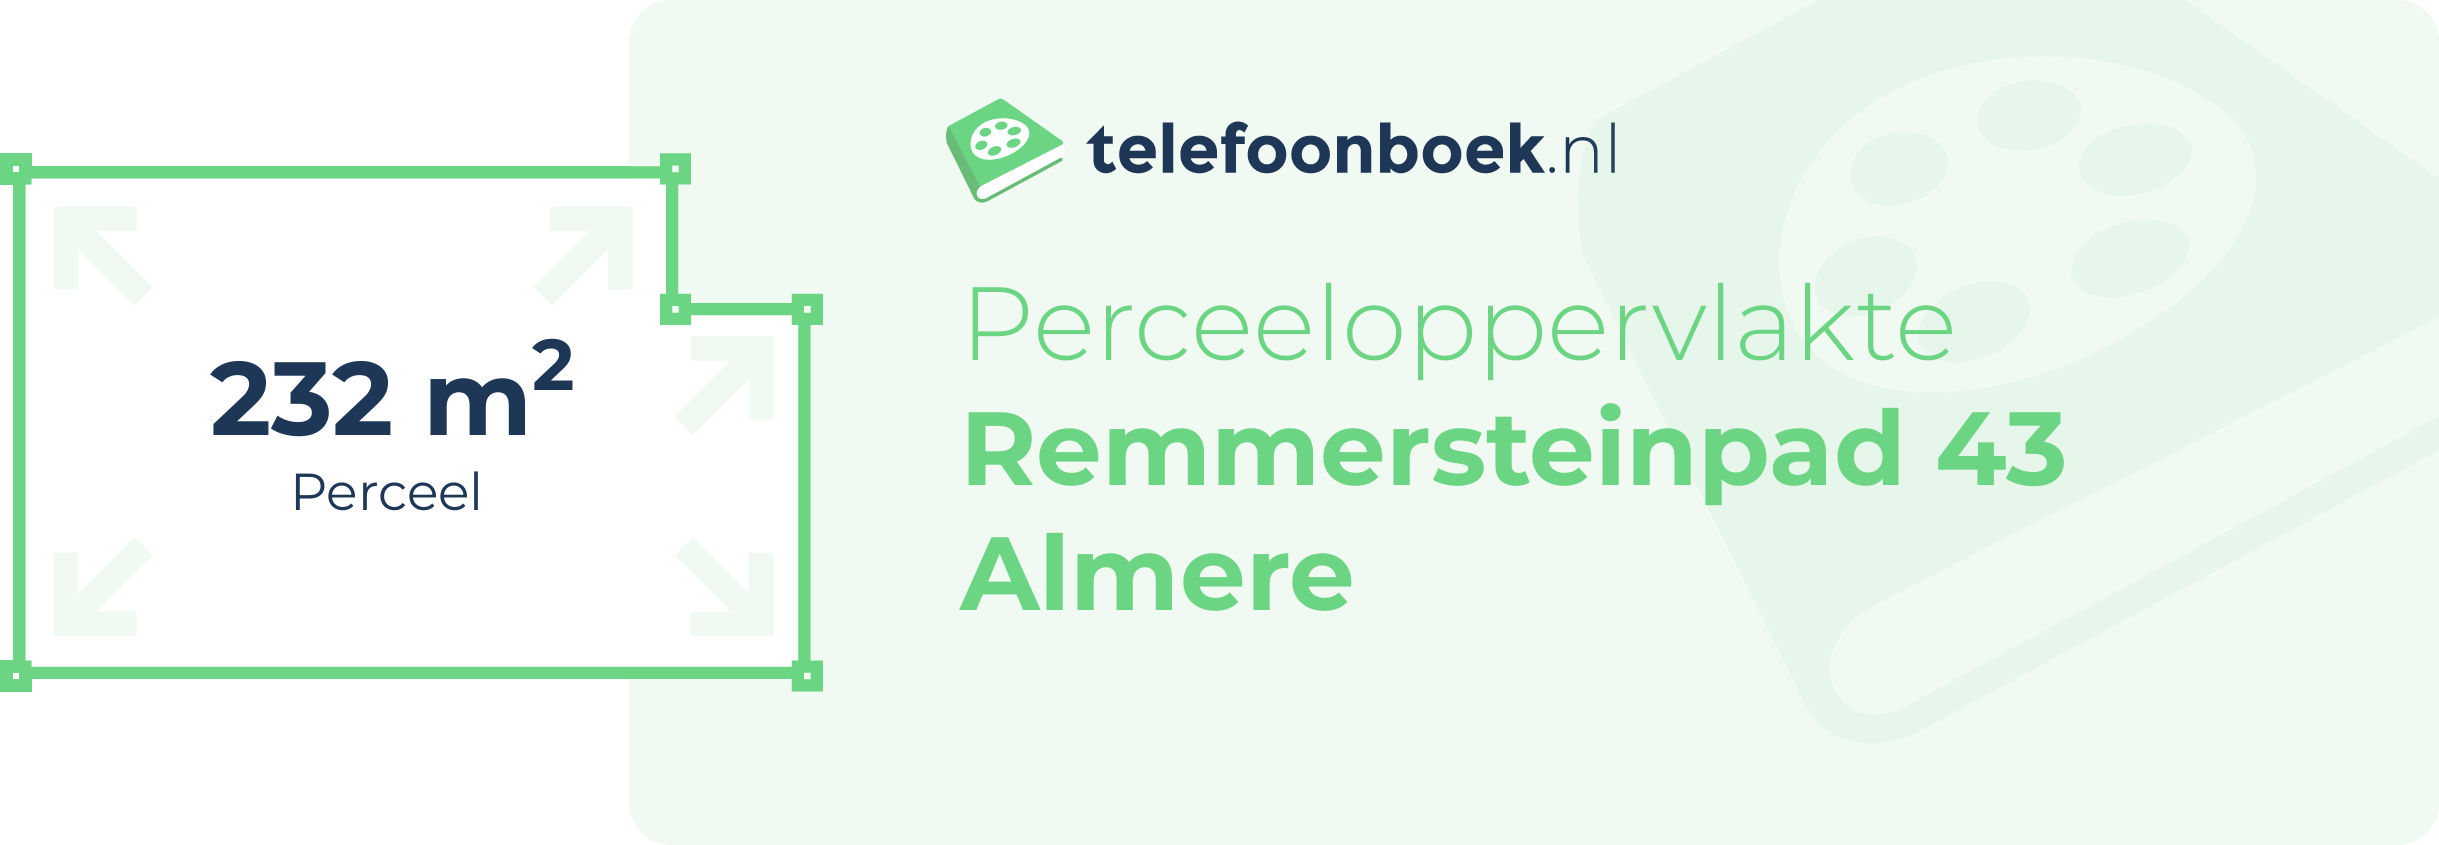 Perceeloppervlakte Remmersteinpad 43 Almere